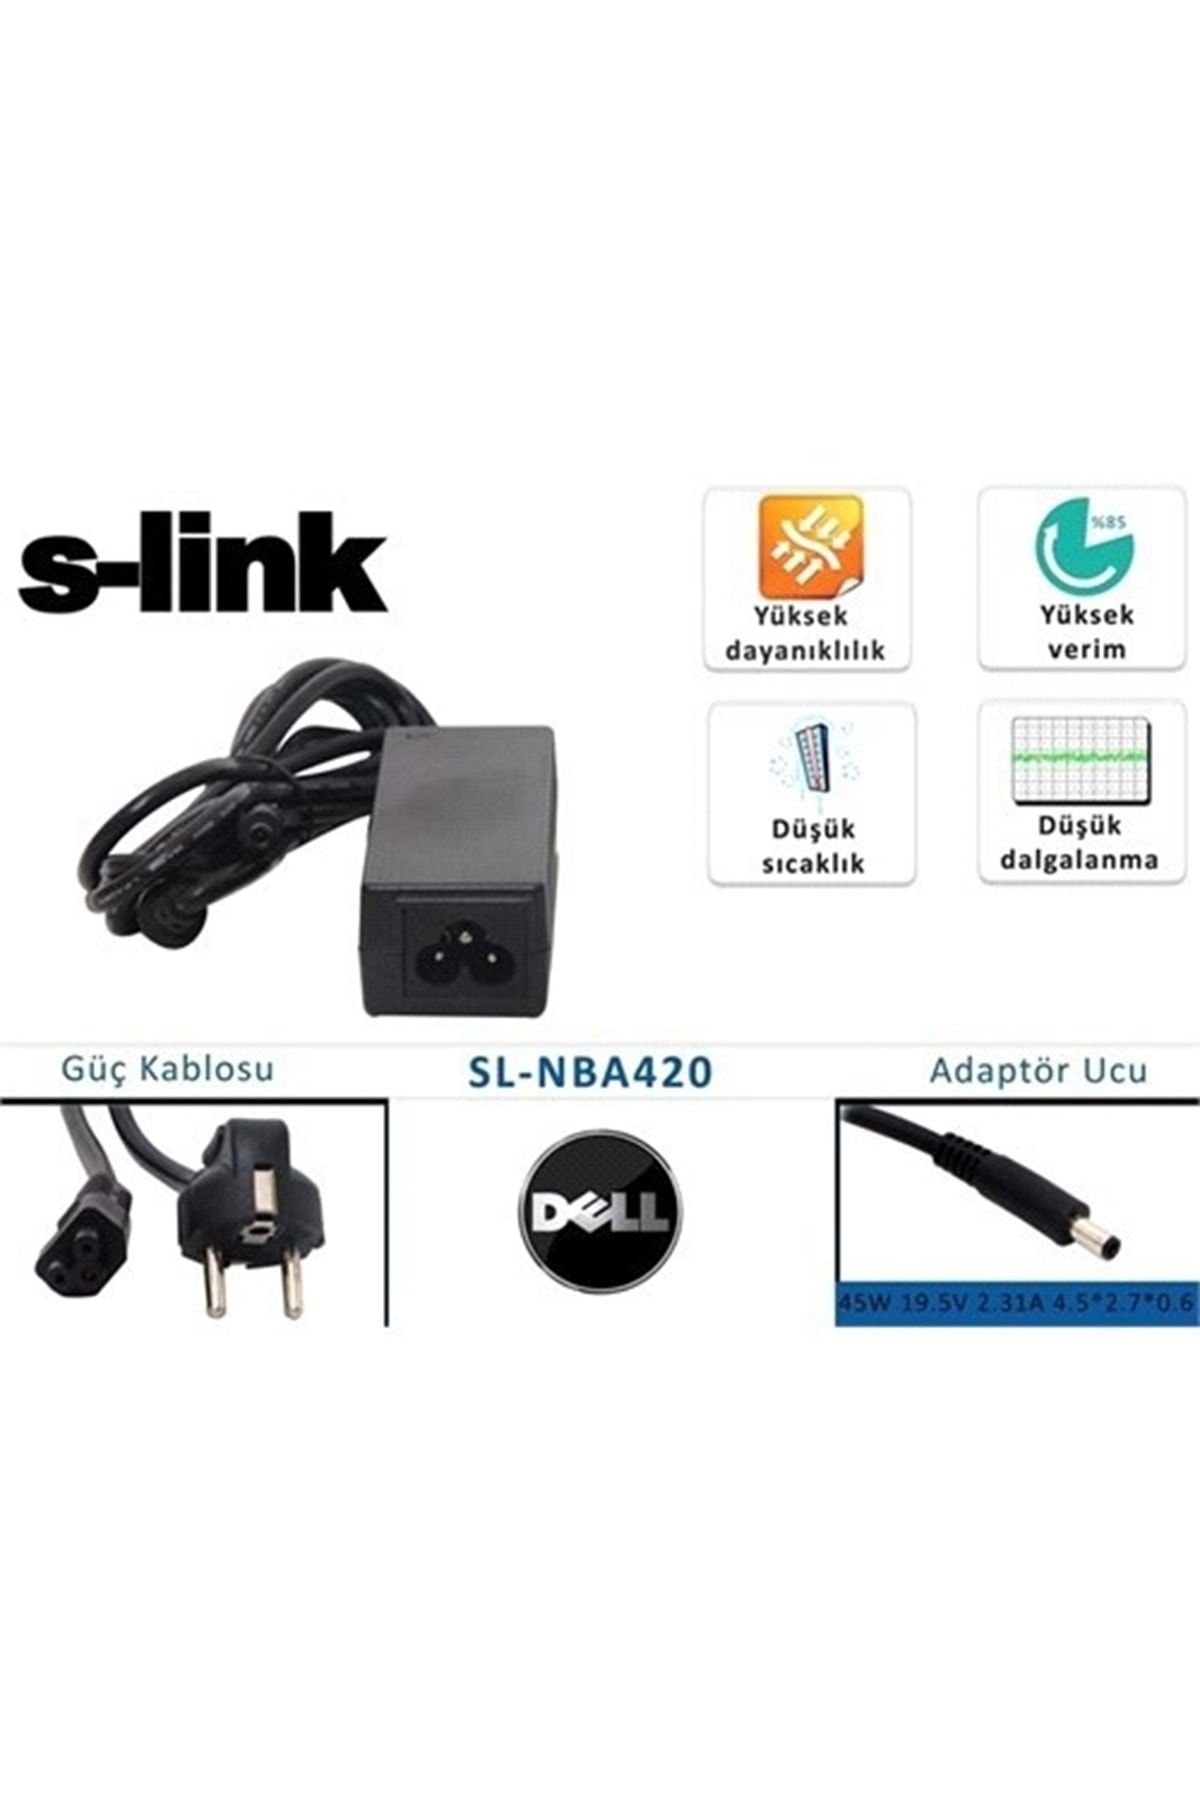 S-Link Sl-nba420 45w 19.5v 2.31a 4.5*2.7*0.6 Dell Ultrabook Standart Adaptör